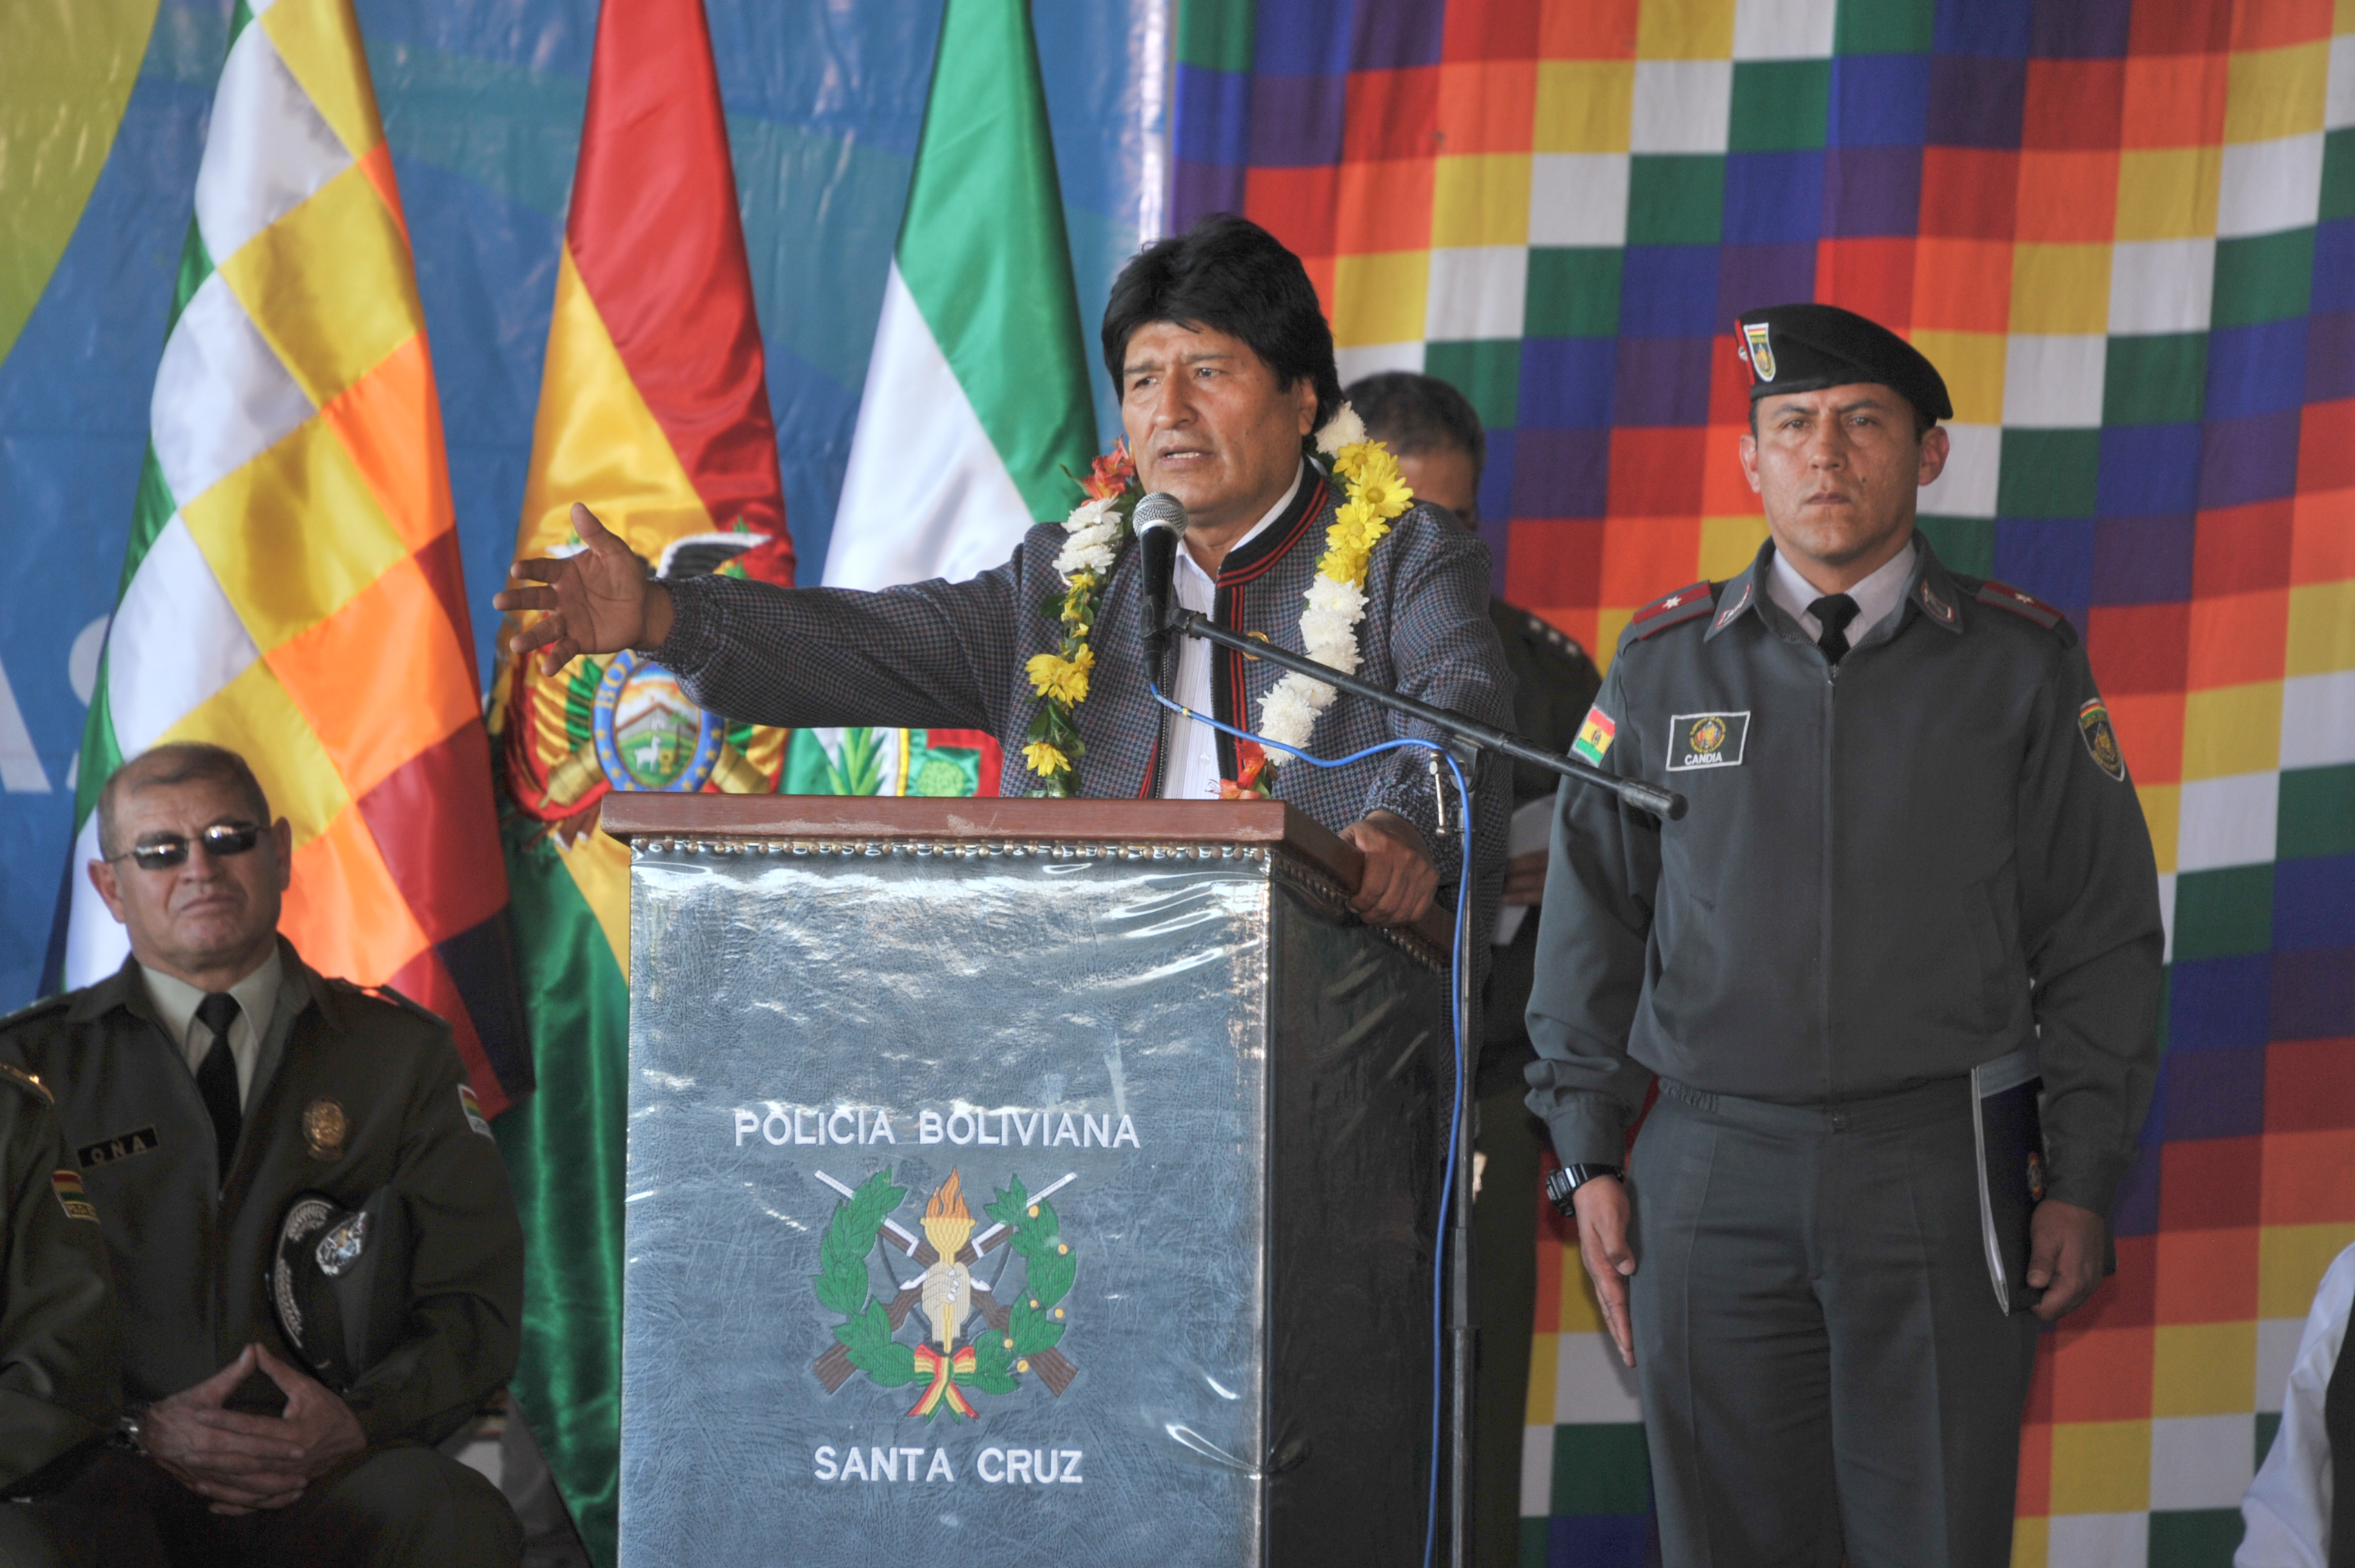 El mandatario boliviano ejerce su tercer Gobierno, tras ser reelegido en 2015 con 60 por ciento de los votos.